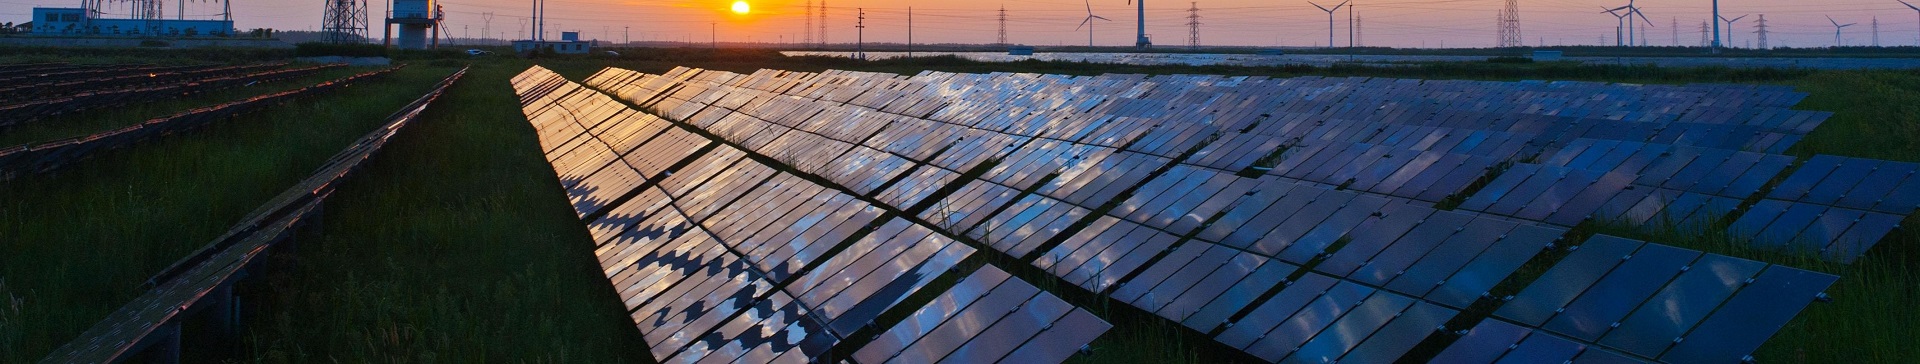 L'avenir de l'énergie solaire